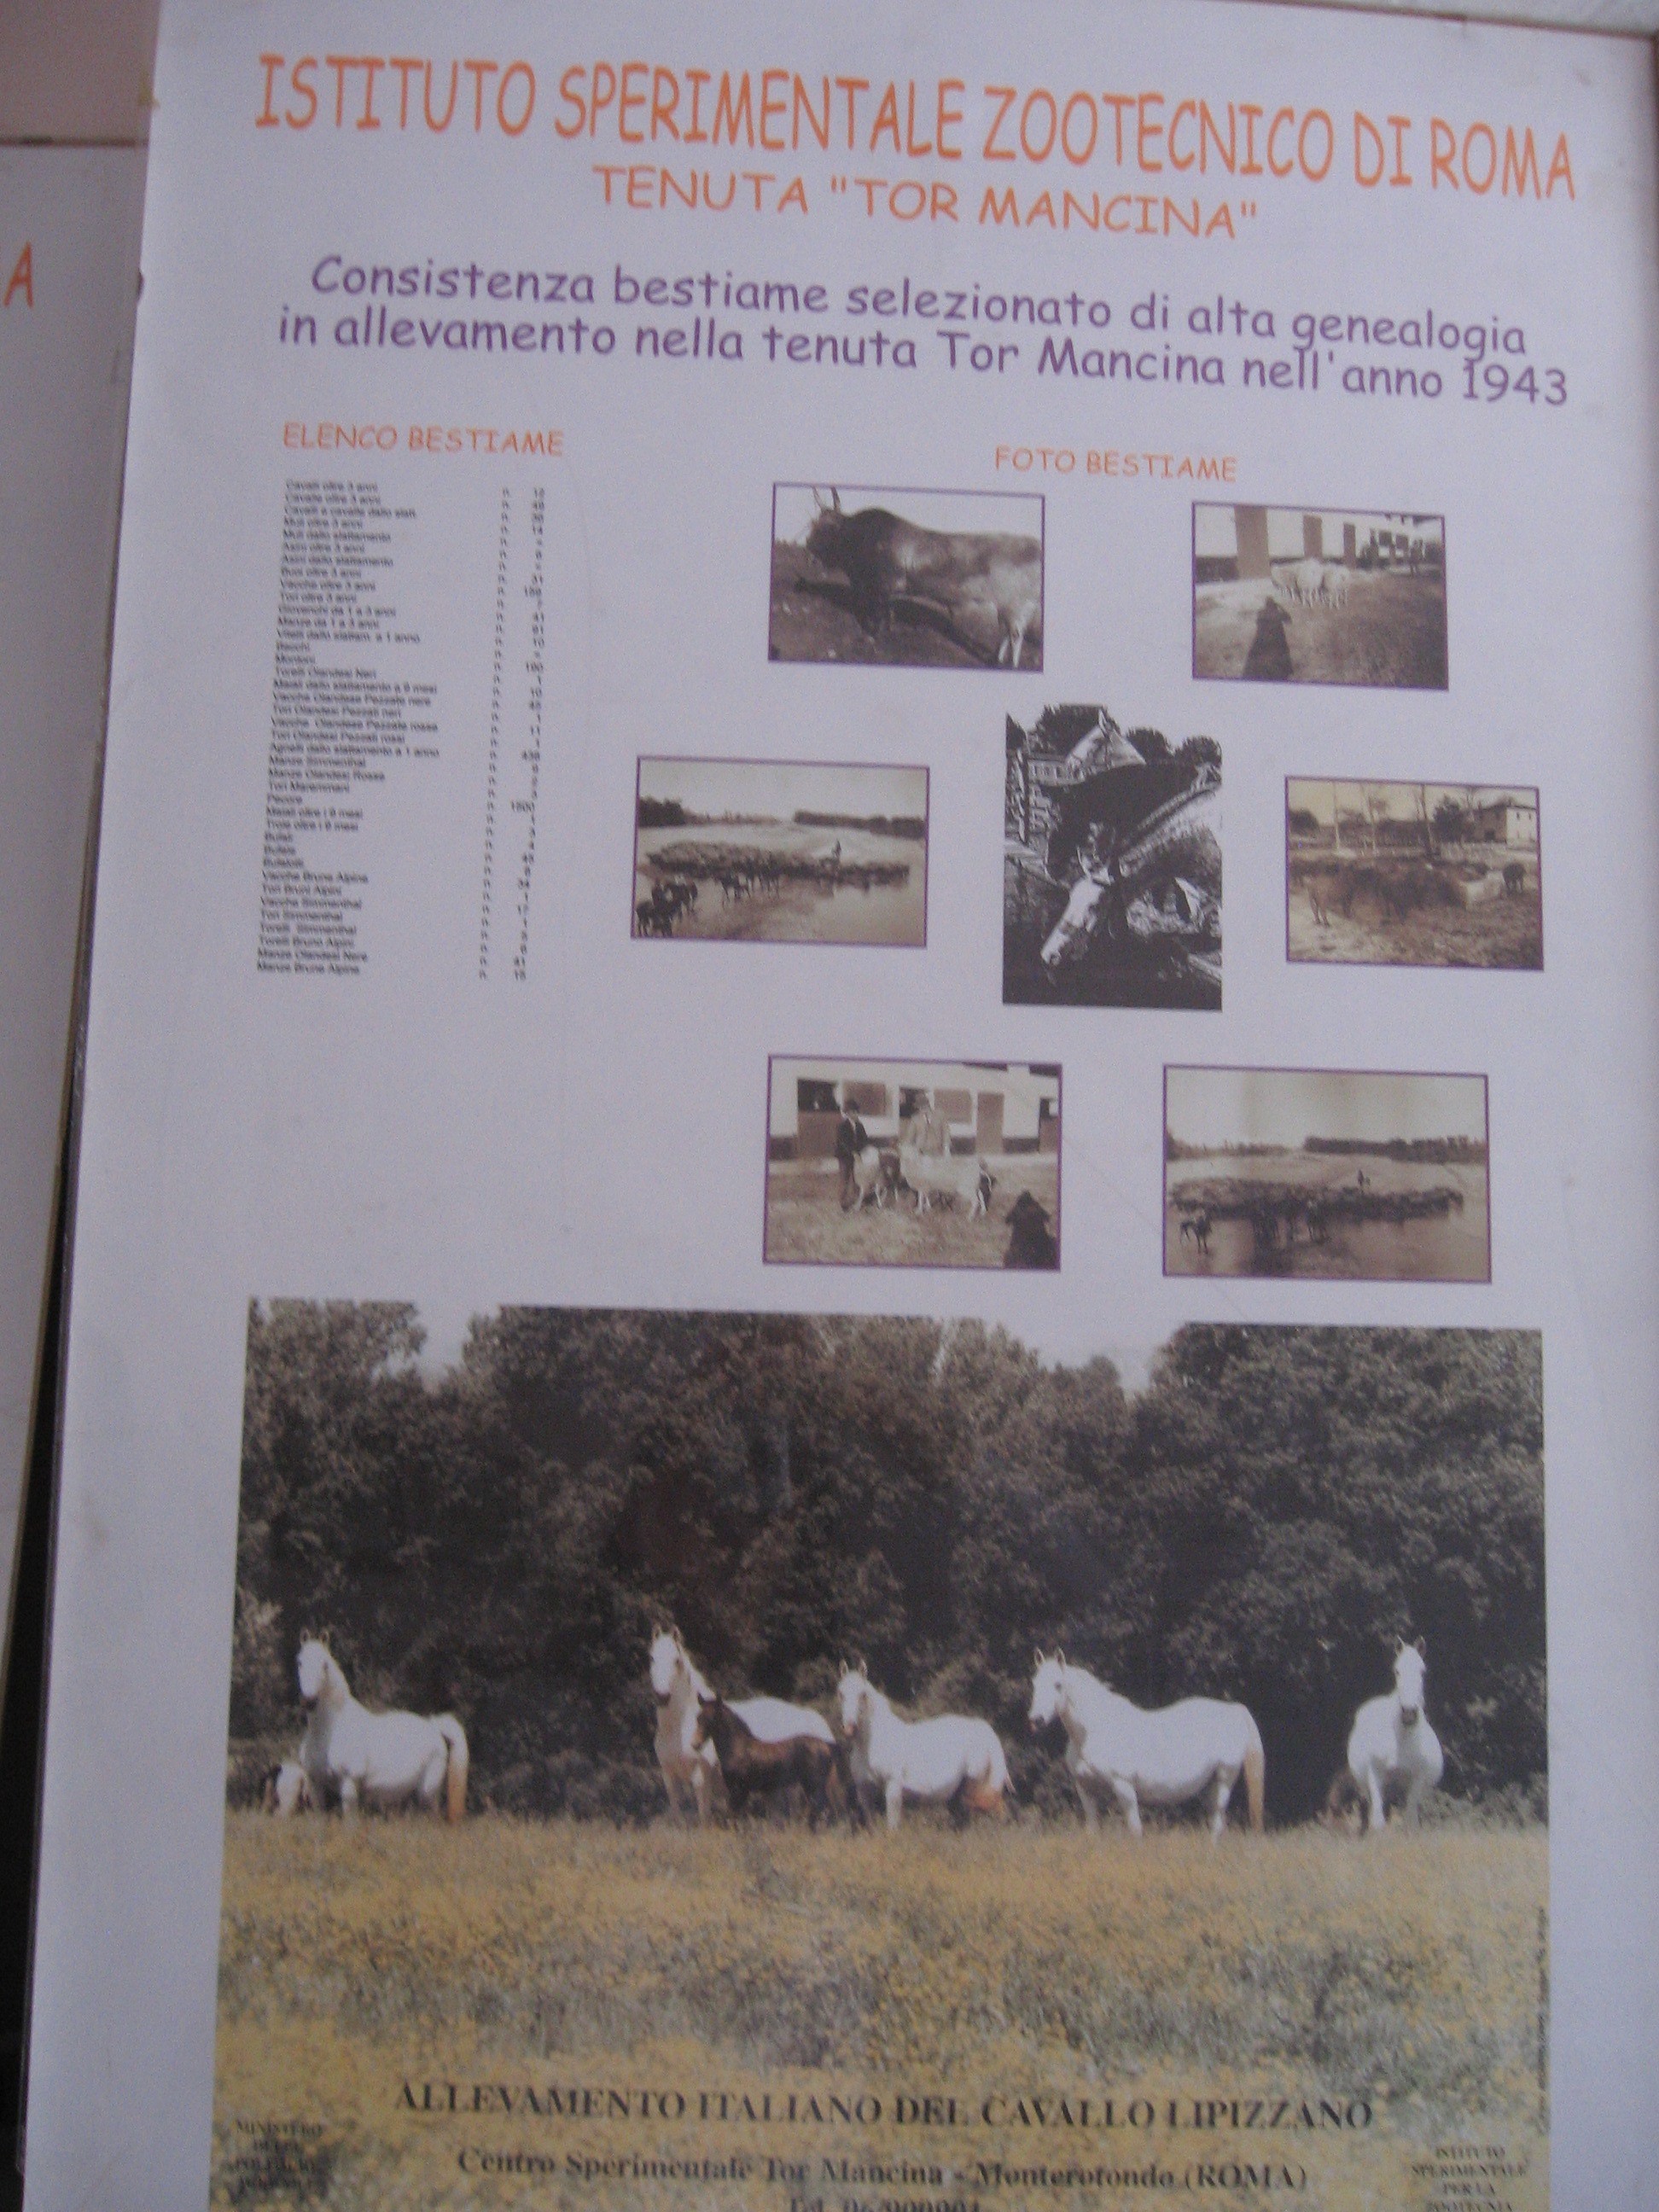 Pannello che descrive la  consistenza del bestiame selezionato di alta genealogia allevato nella Tenuta di Tor Mancina nell’anno 1943. Foto bestiame